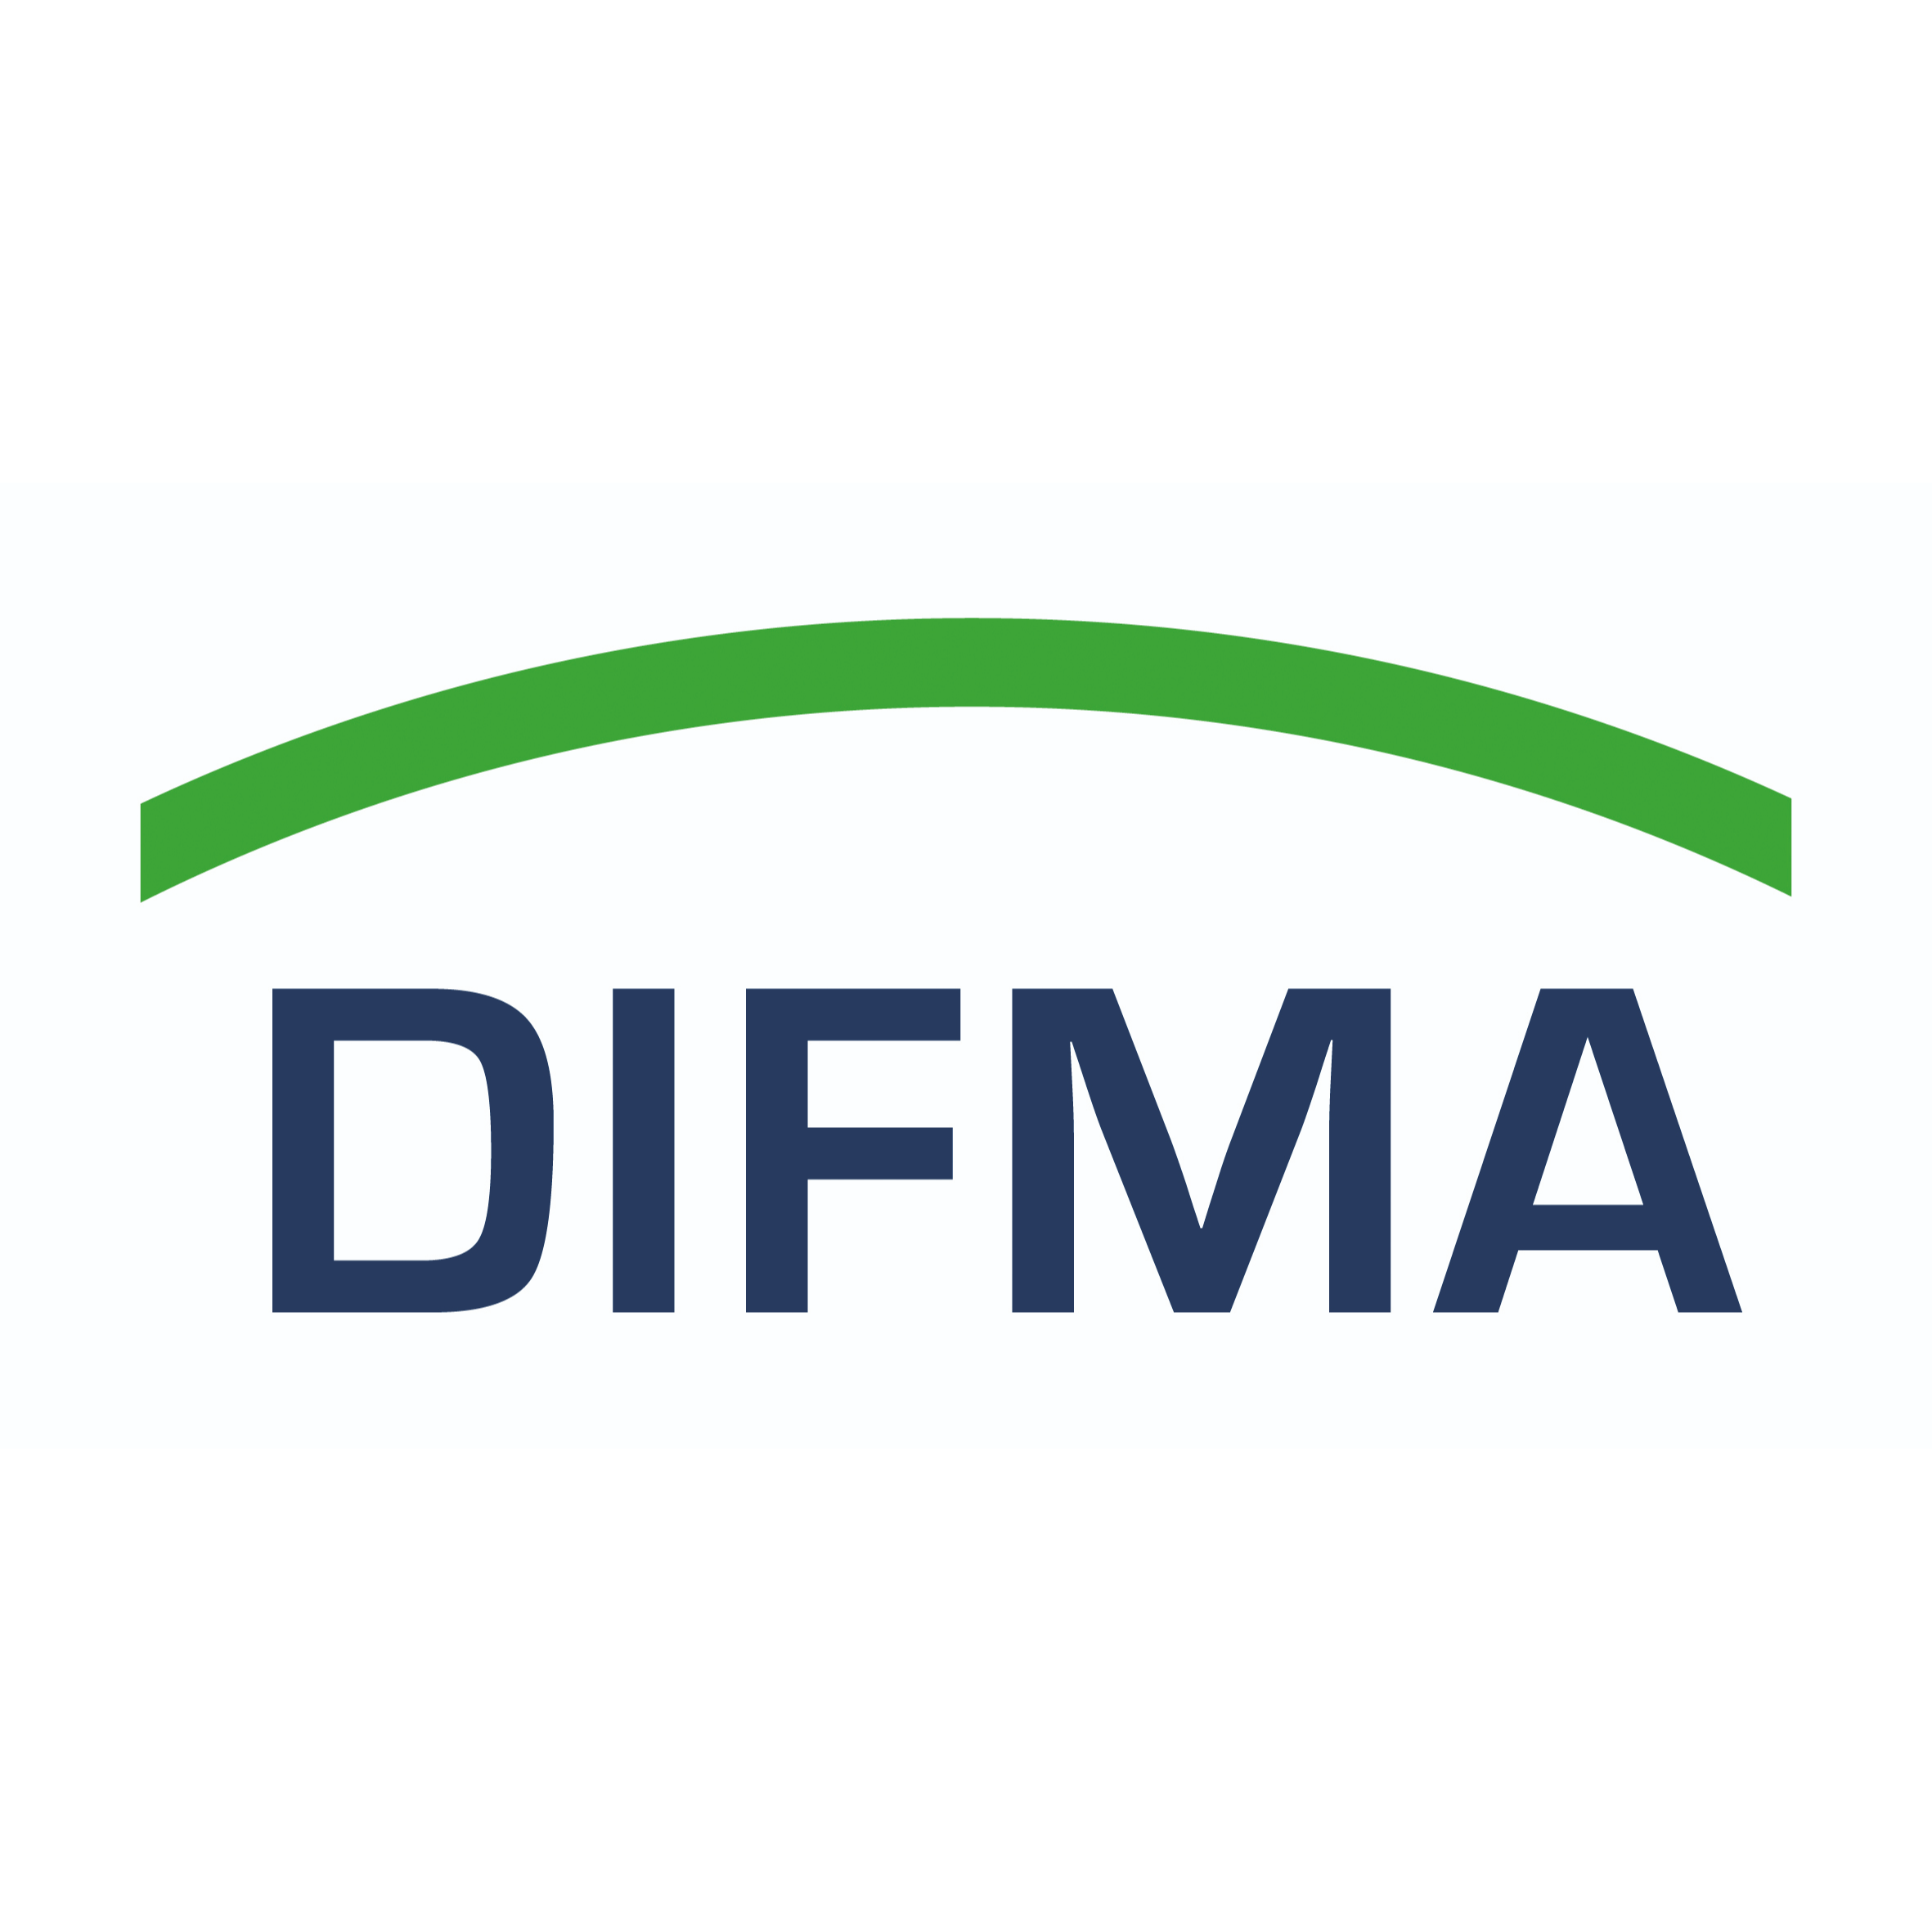 DIFMA Deutsches Institut für Facility Management GmbH in Nürnberg - Logo